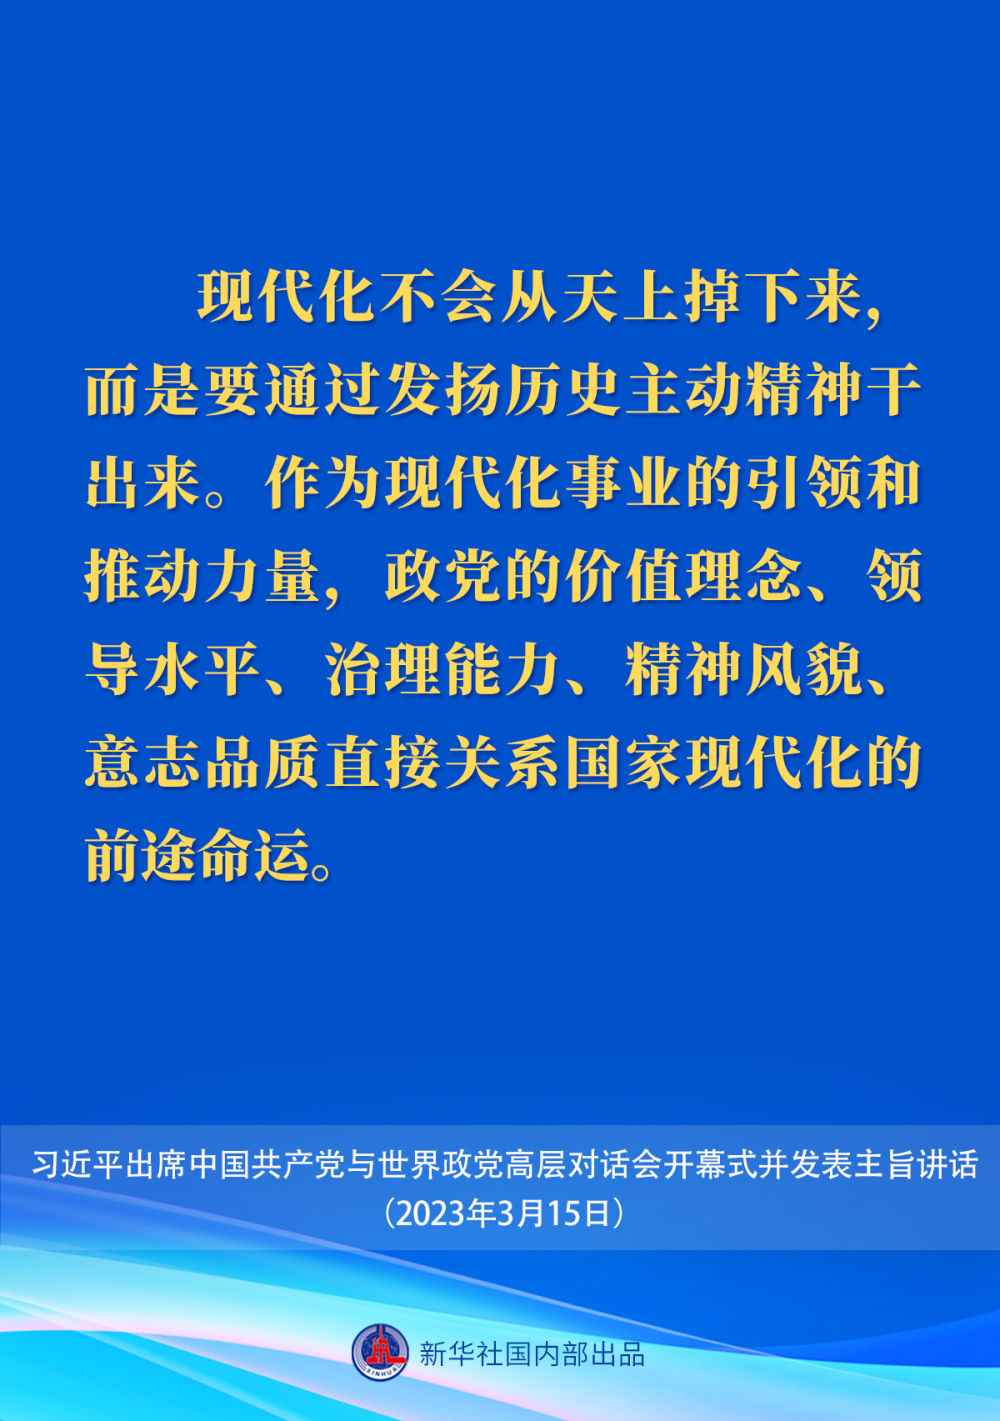 习近平在中国共产党与世界政党高层对话会上的主旨讲话要点4.jpeg